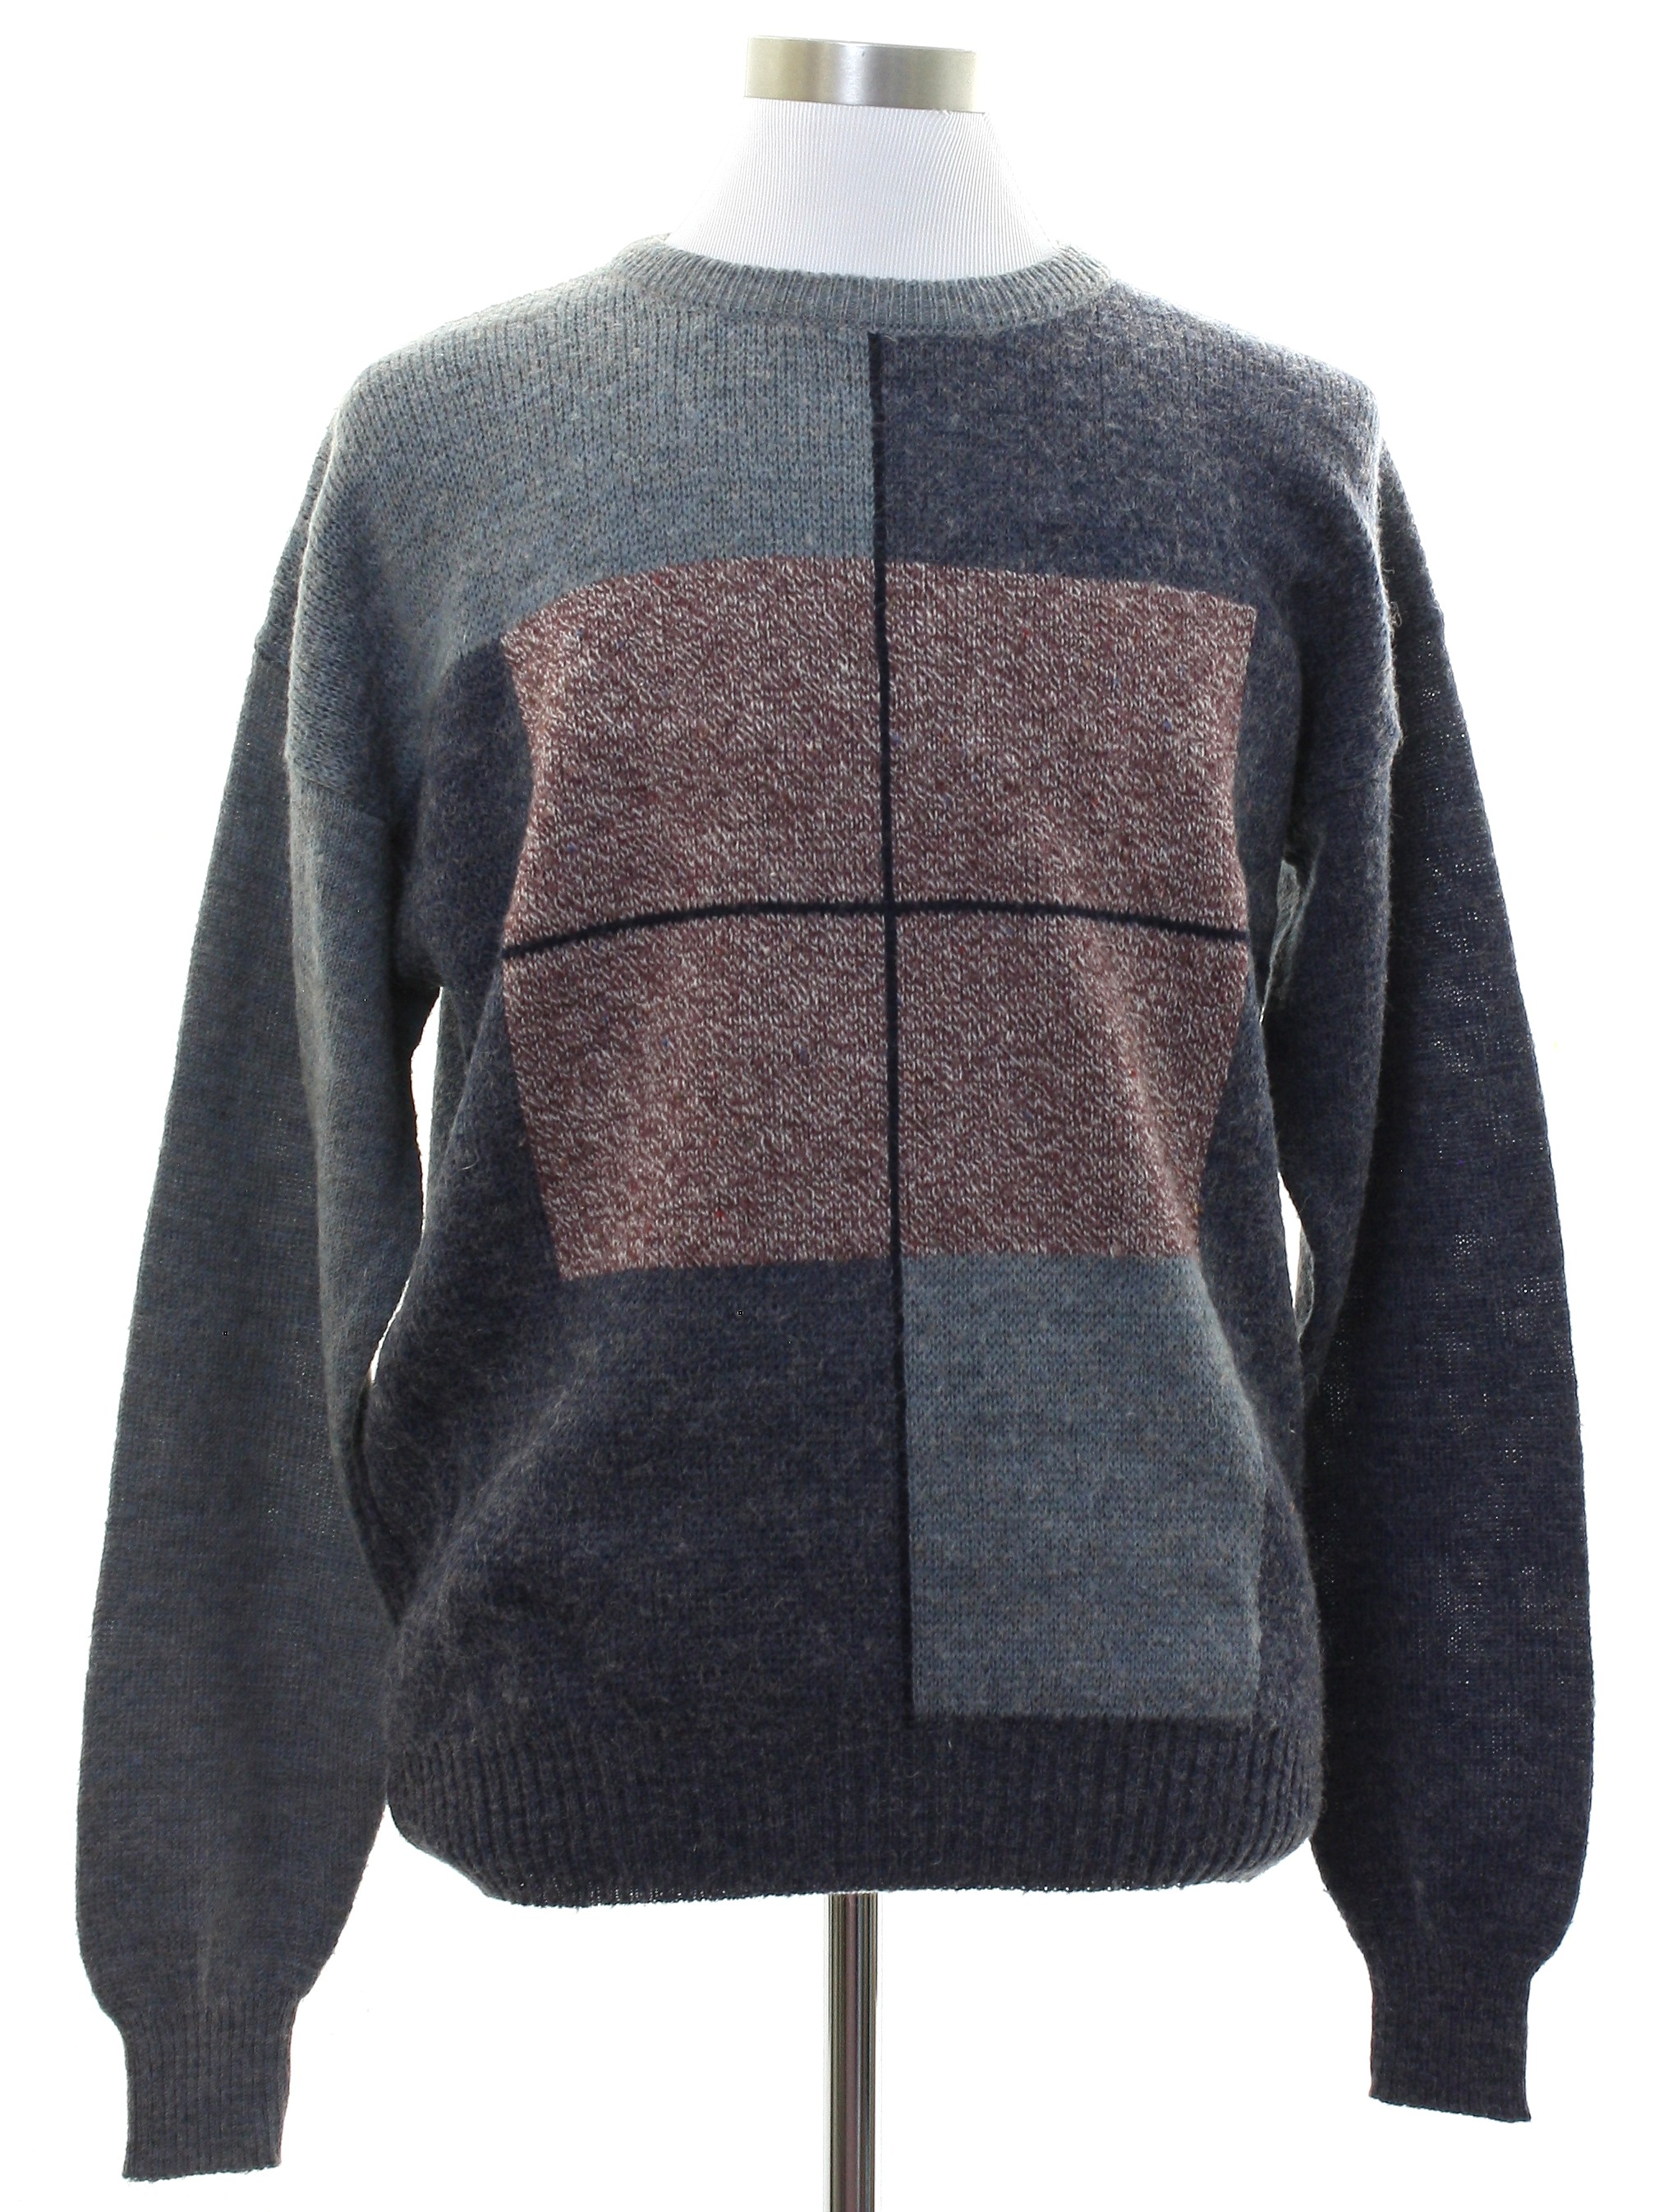 1980's Sweater (Vanderbilt): Late 80s -Vanderbilt- Mens shades of gray ...